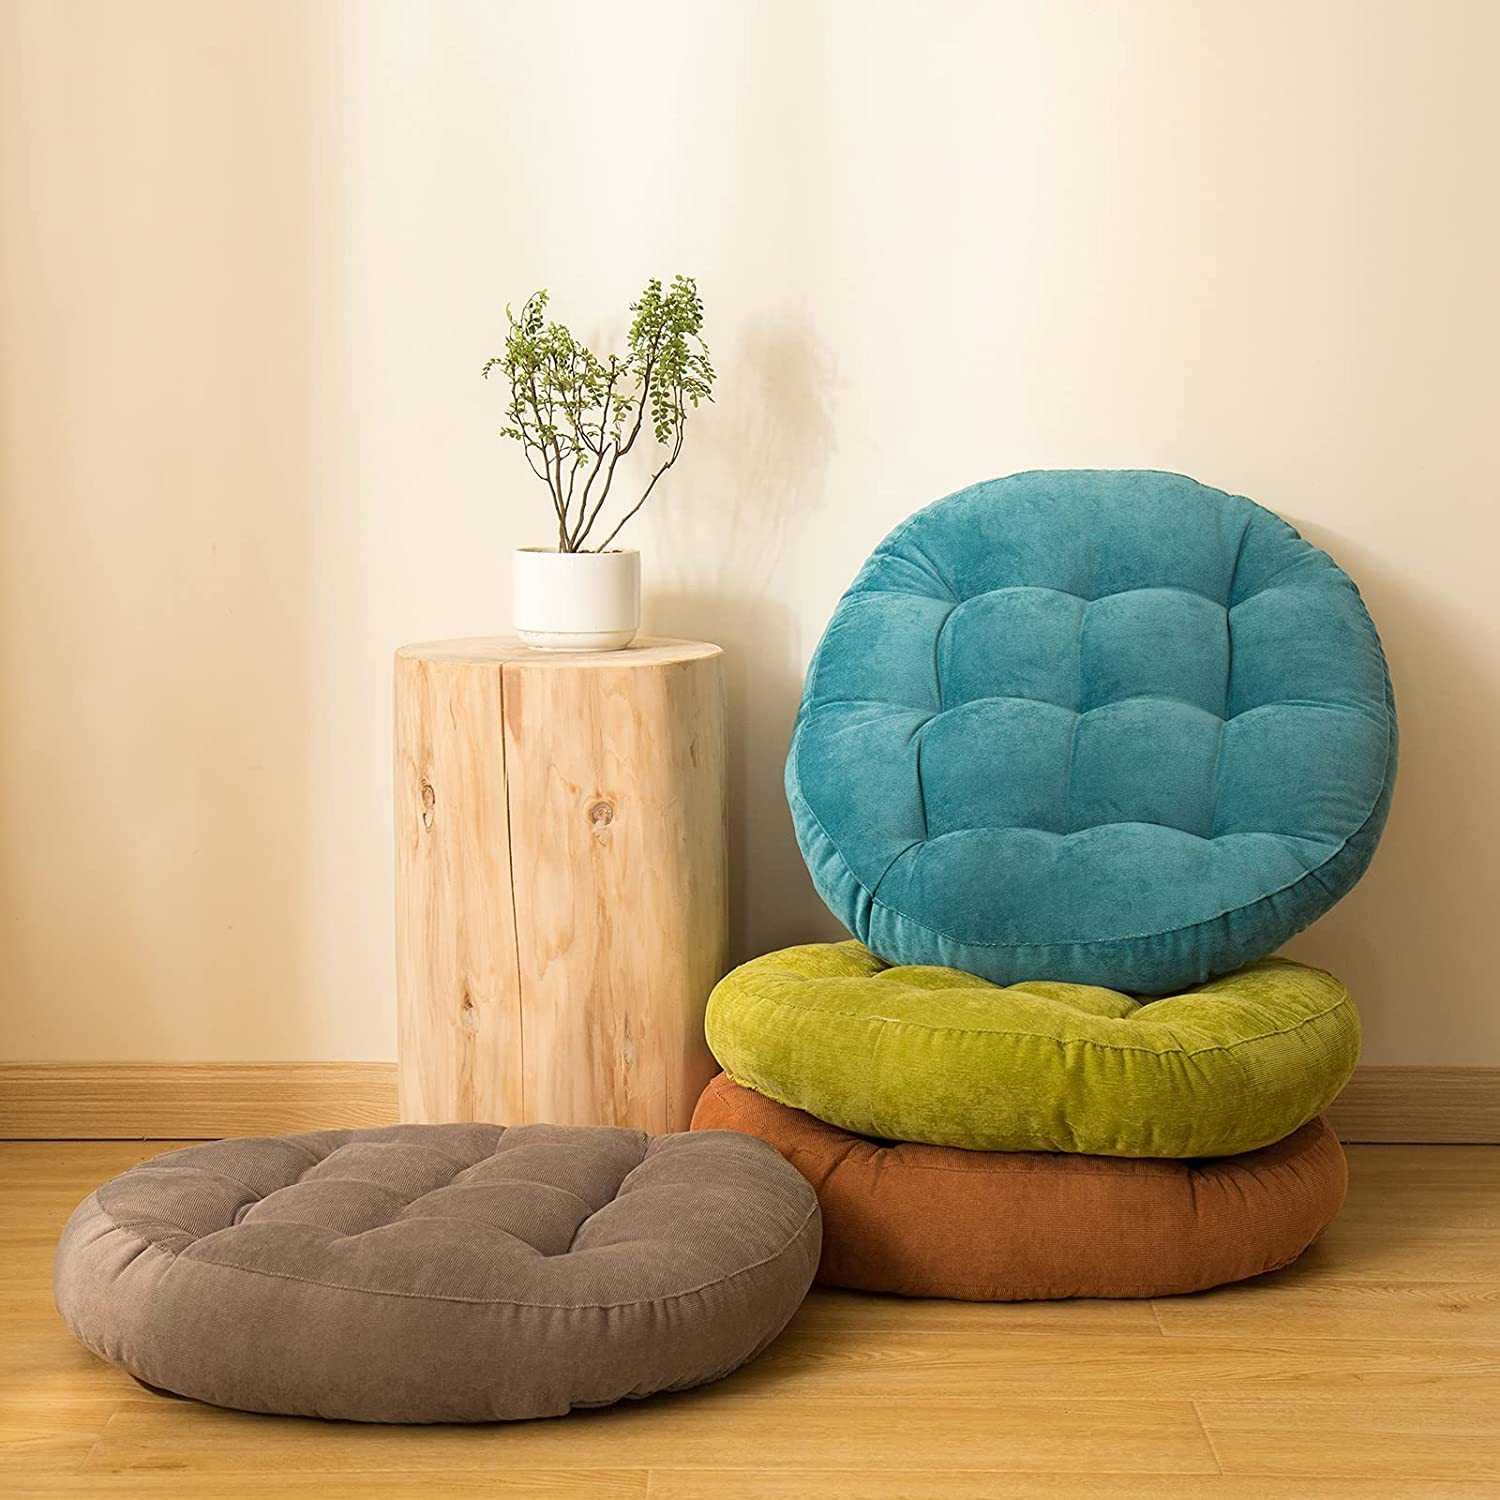 Напольные подушки и сидушки - разные формы и виды оформления. Шаблоны и идеи для воплощения.